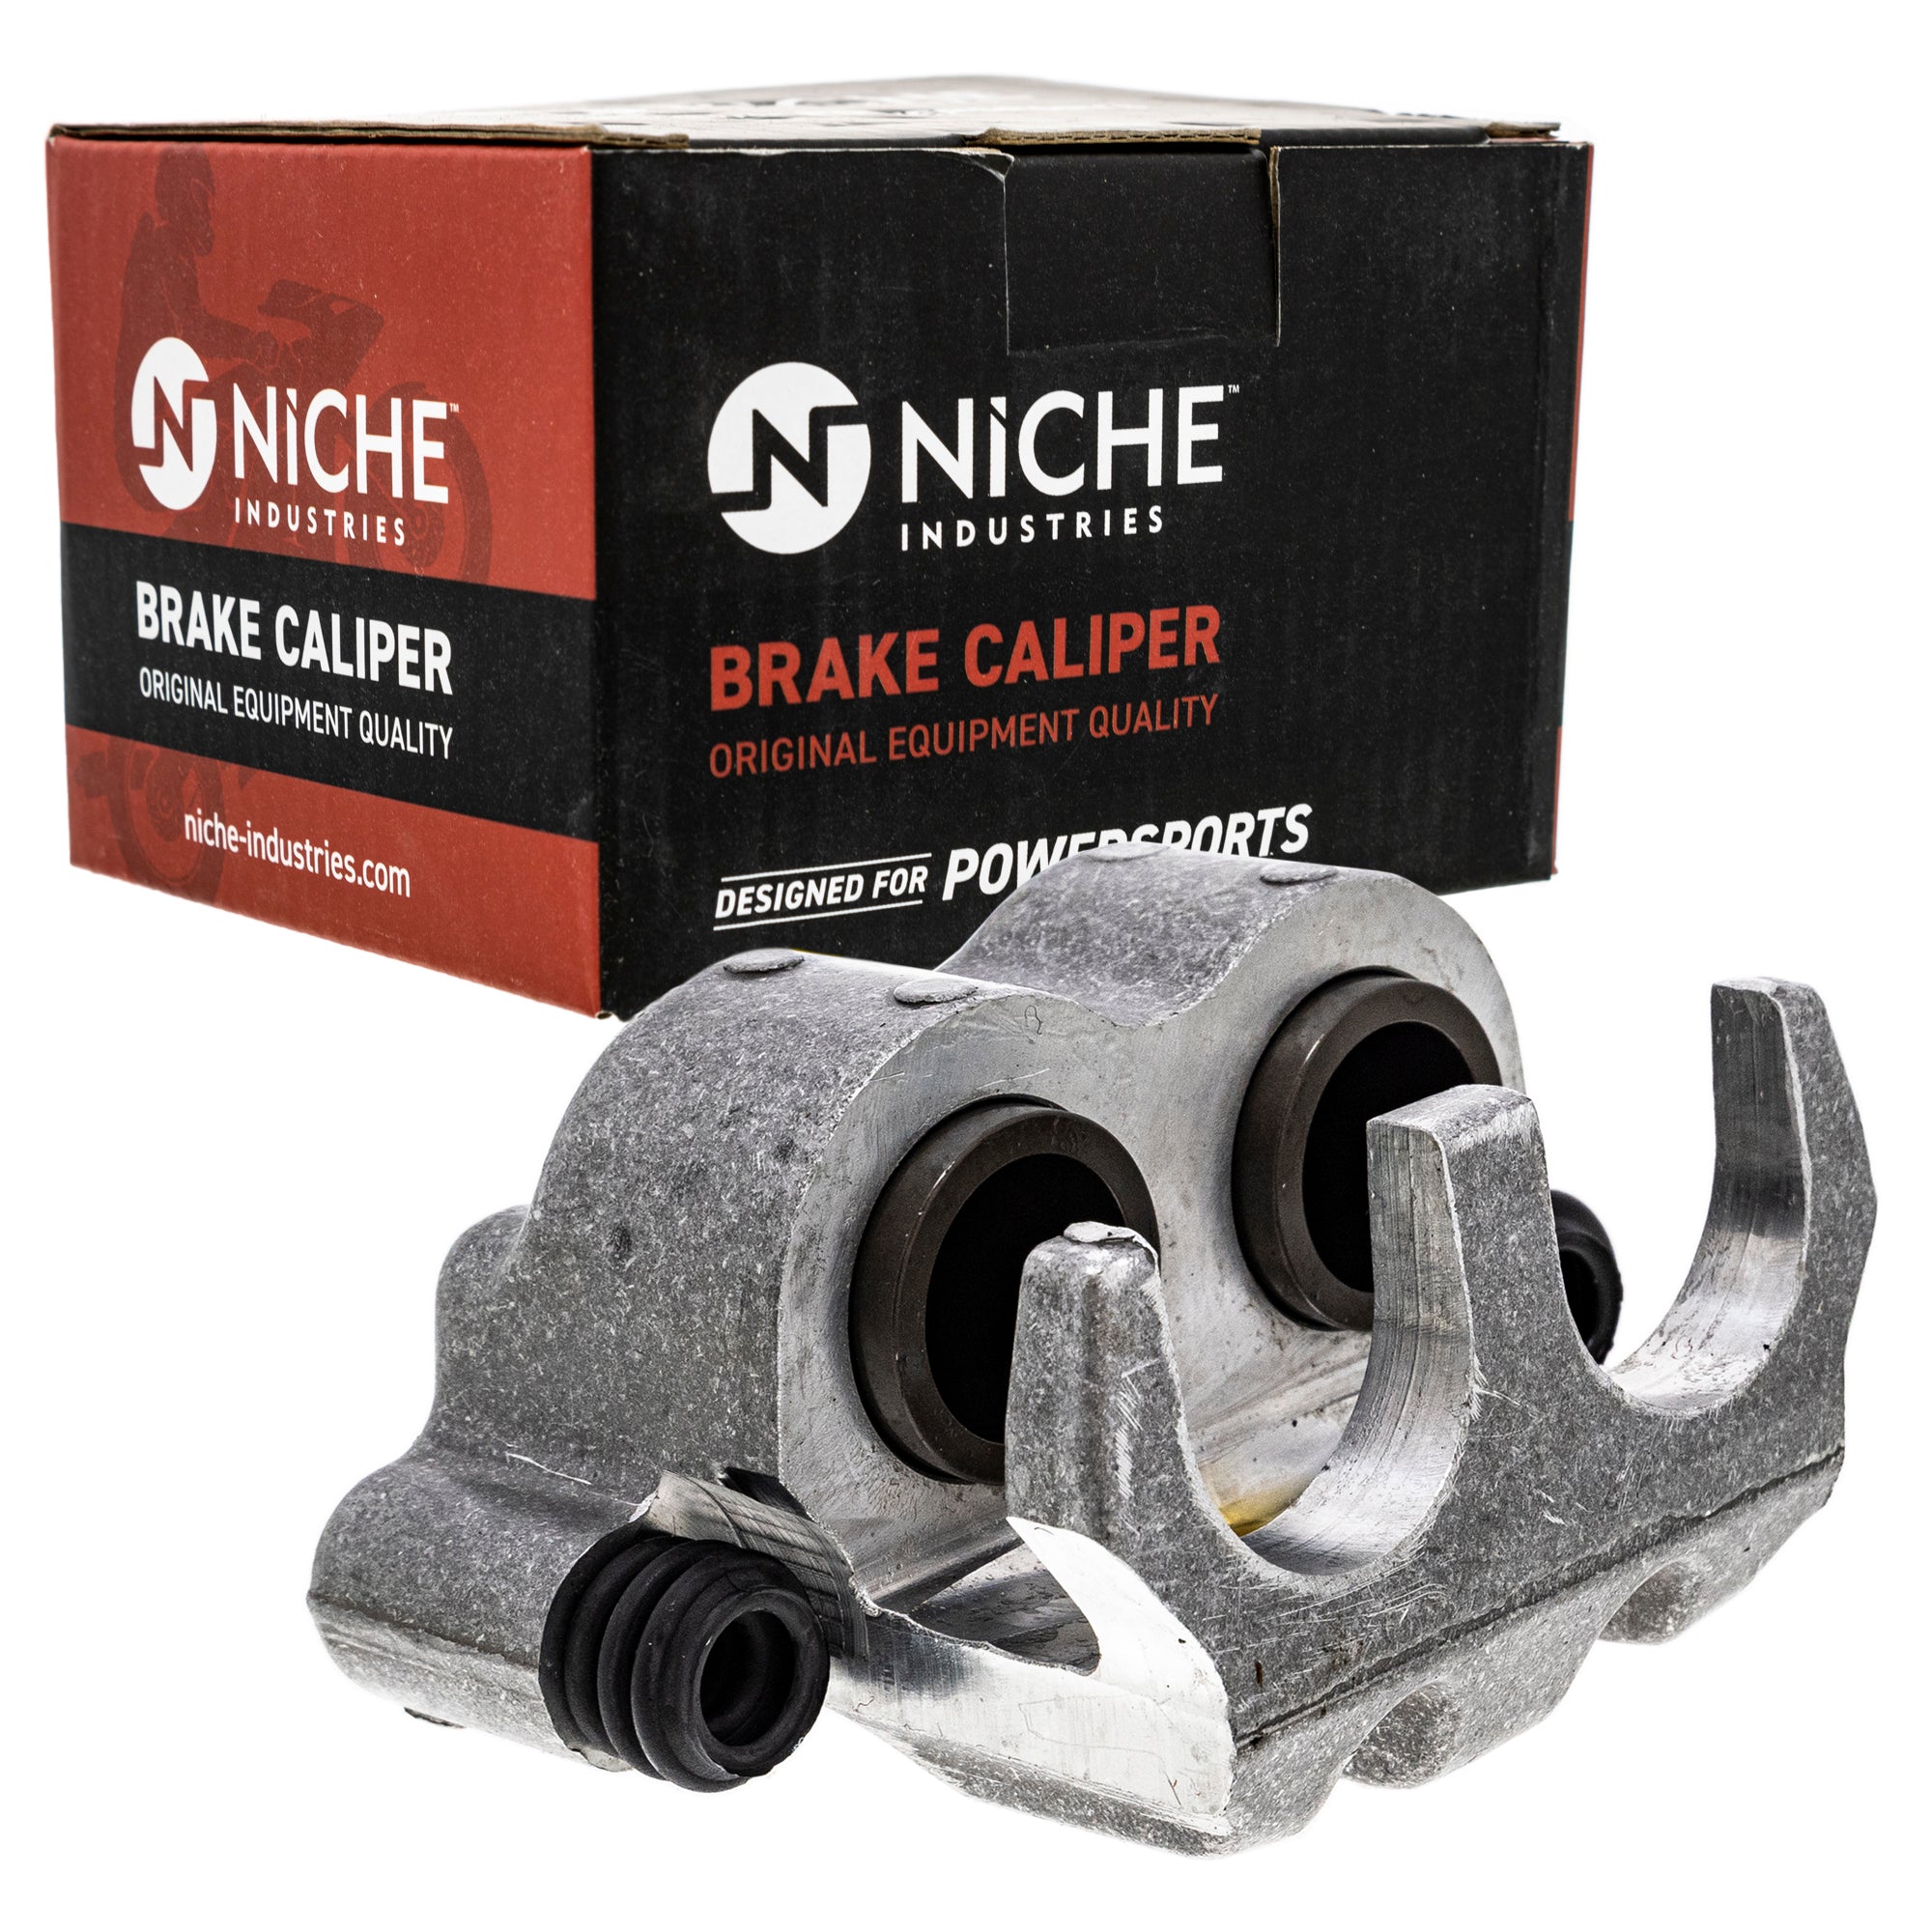 NICHE MK1001057 Brake Caliper Kit